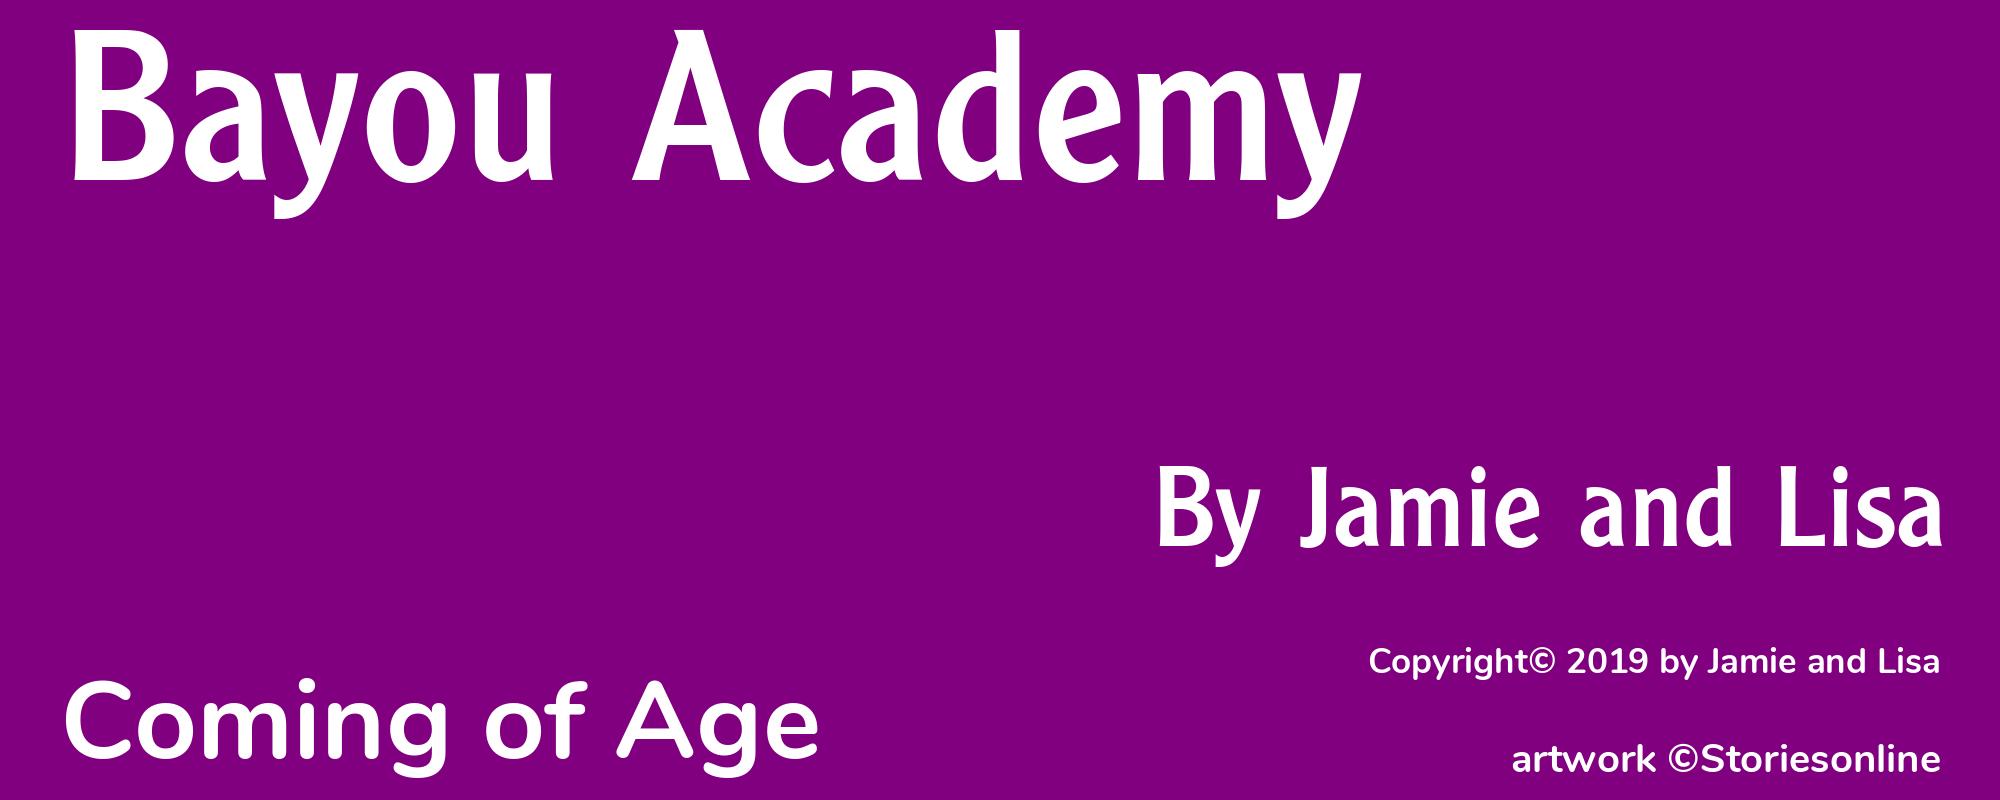 Bayou Academy - Cover